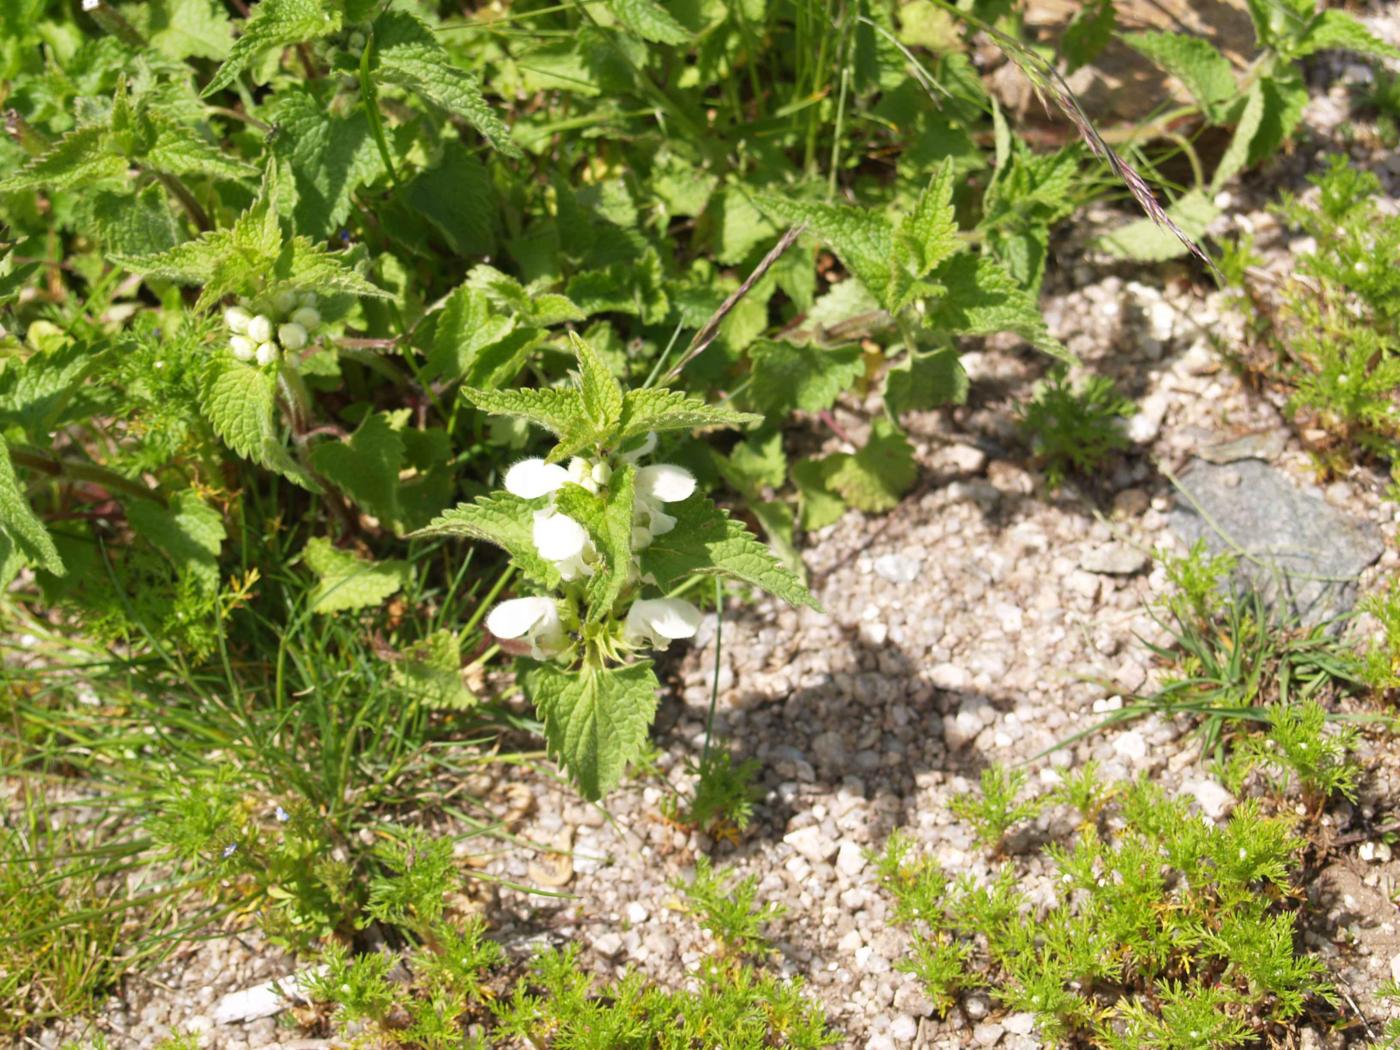 Dead-nettle, White plant